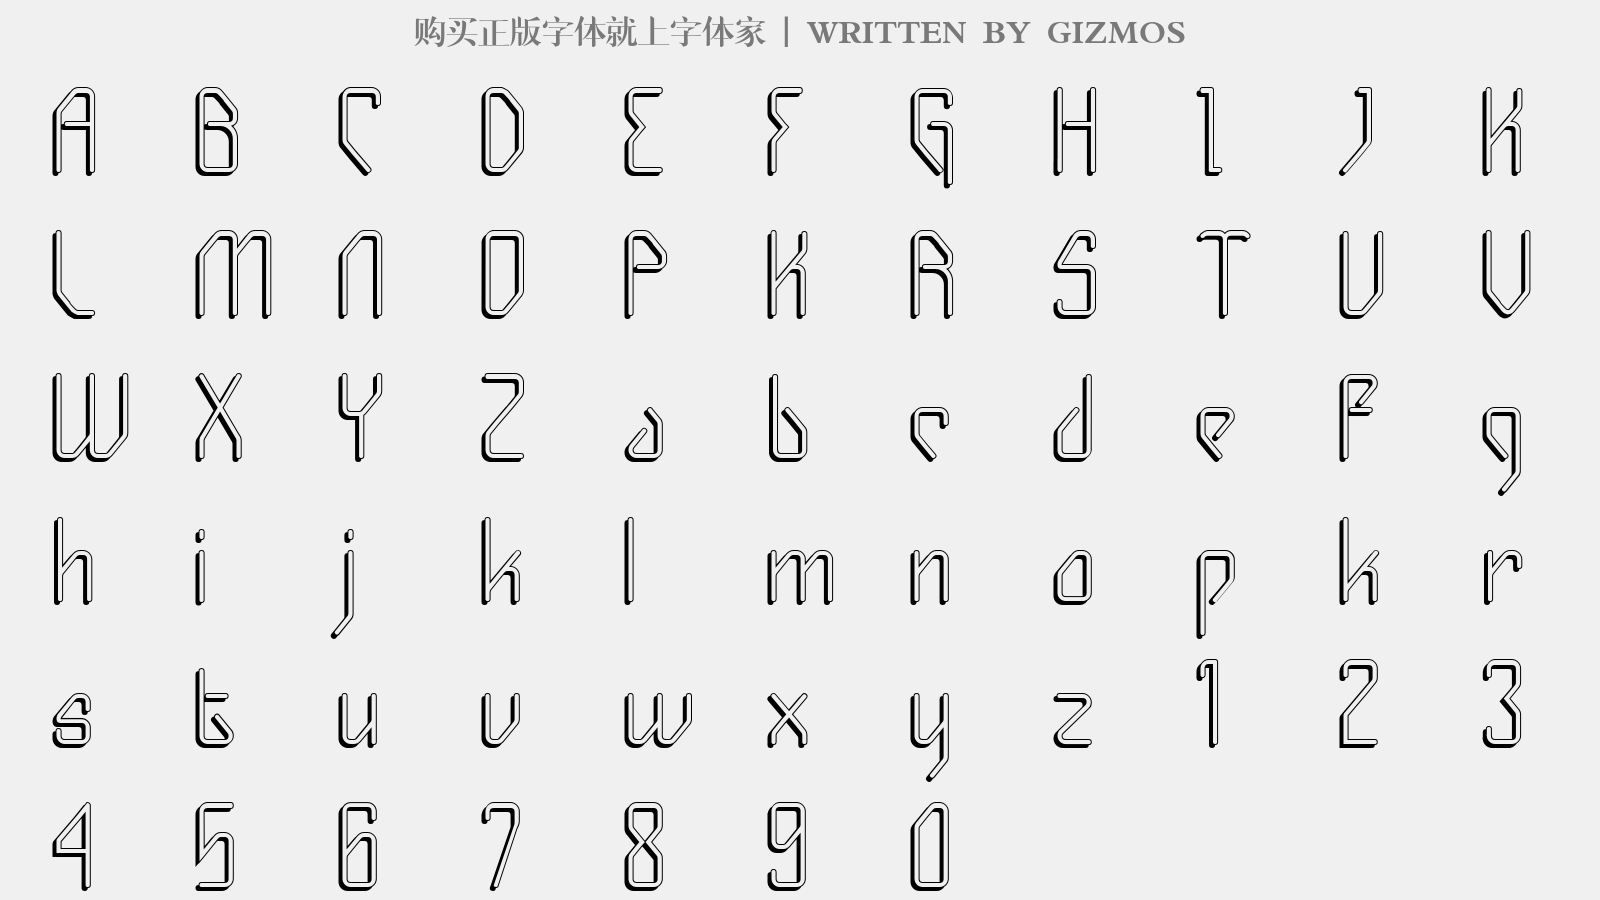 GIZMOS - 大写字母/小写字母/数字